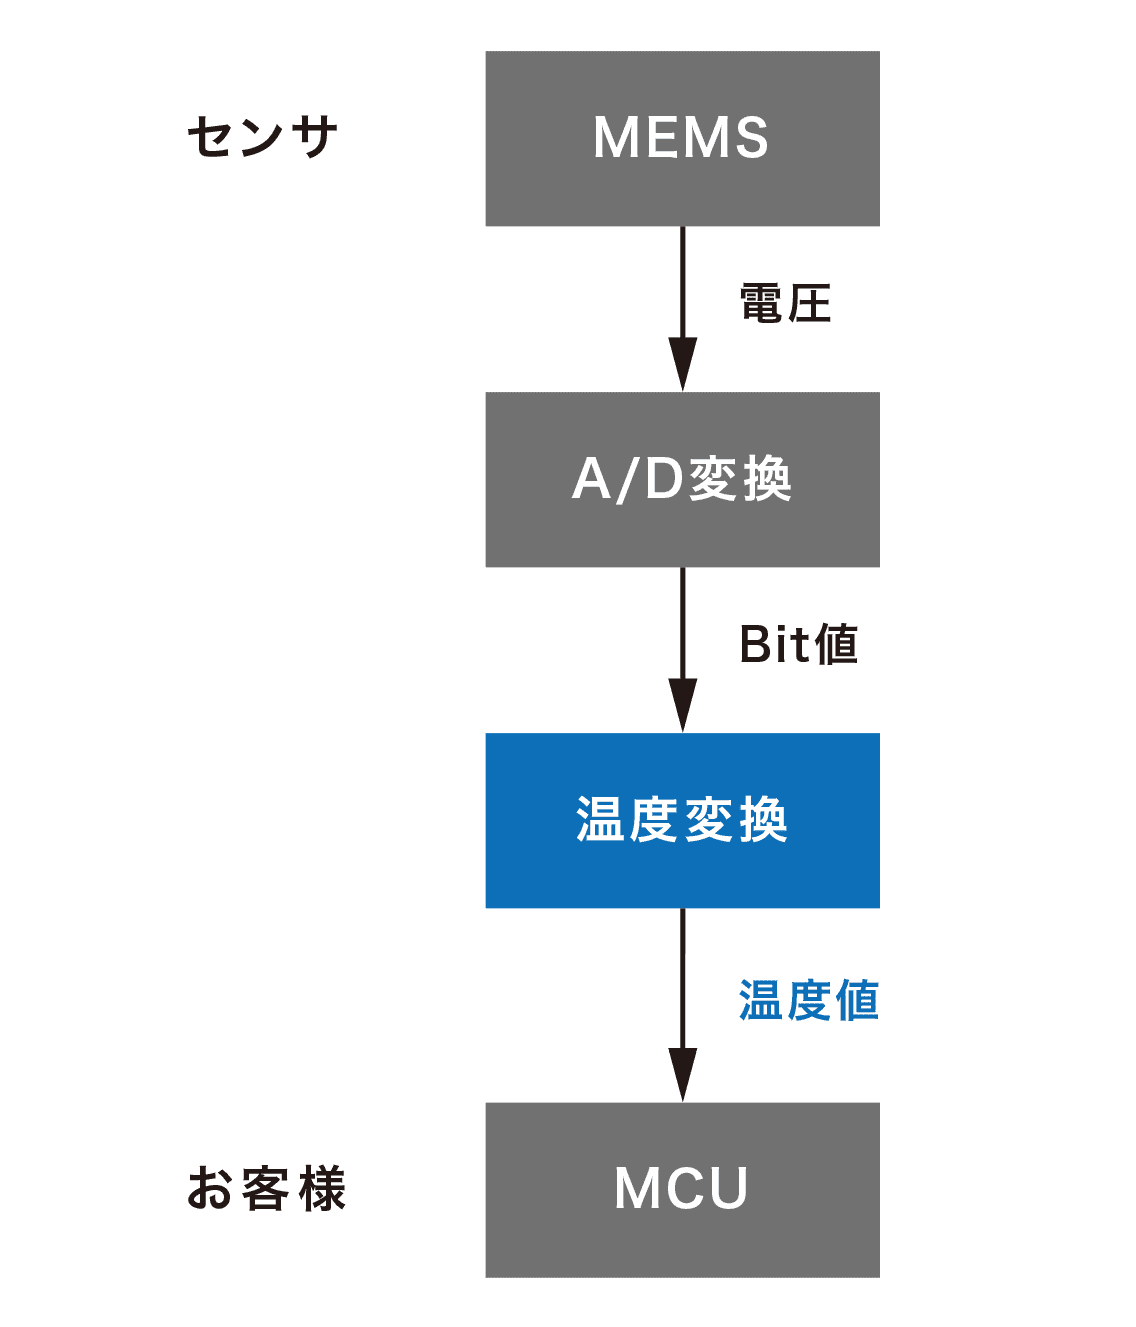 センサ MEMS→（電圧）→A/D変換→（Bit値）→温度変換→（温度値）お客様 MCU